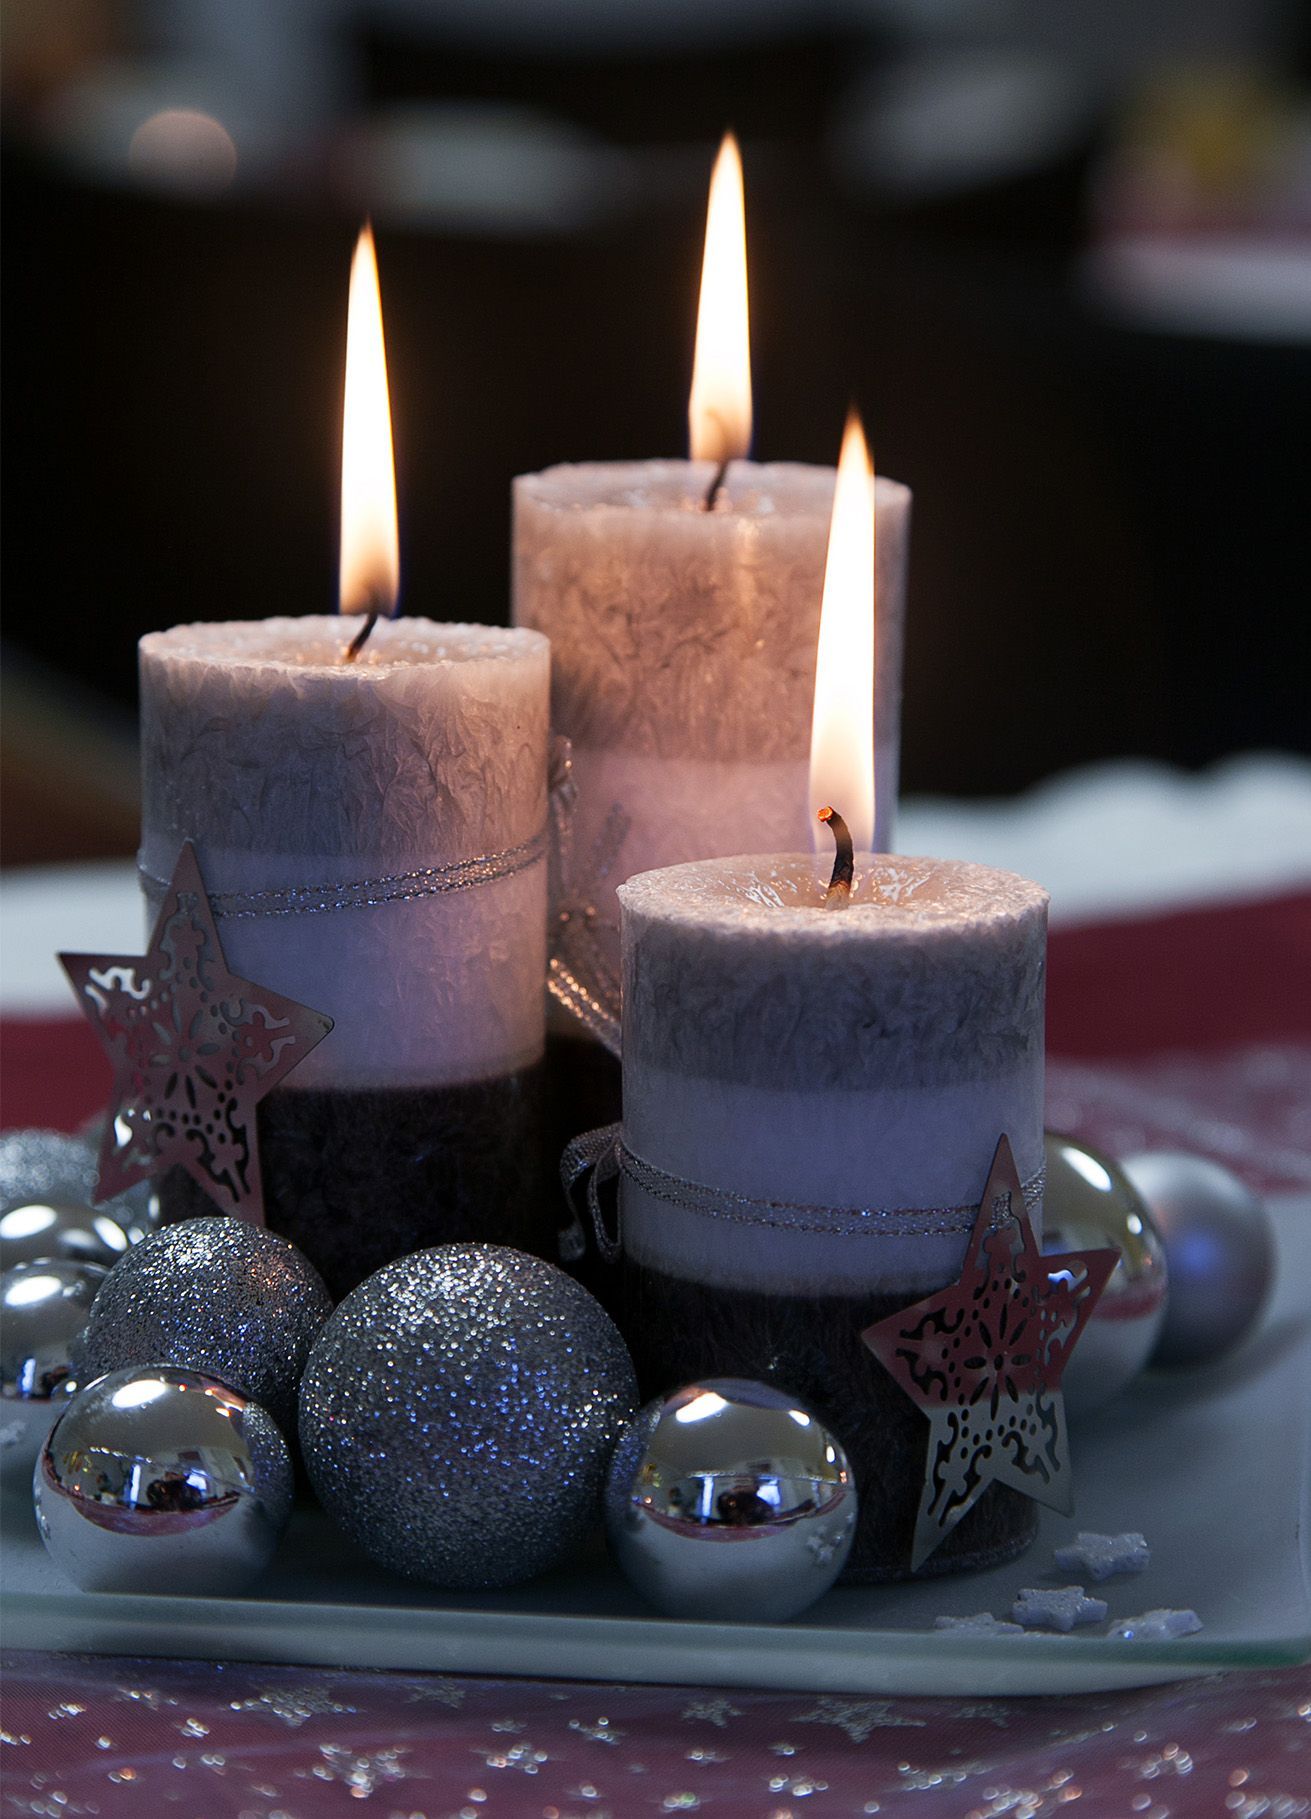 drei silberne kerzen mit weihnachtlicher dekoration brennen vor einem dunklen hintergrund